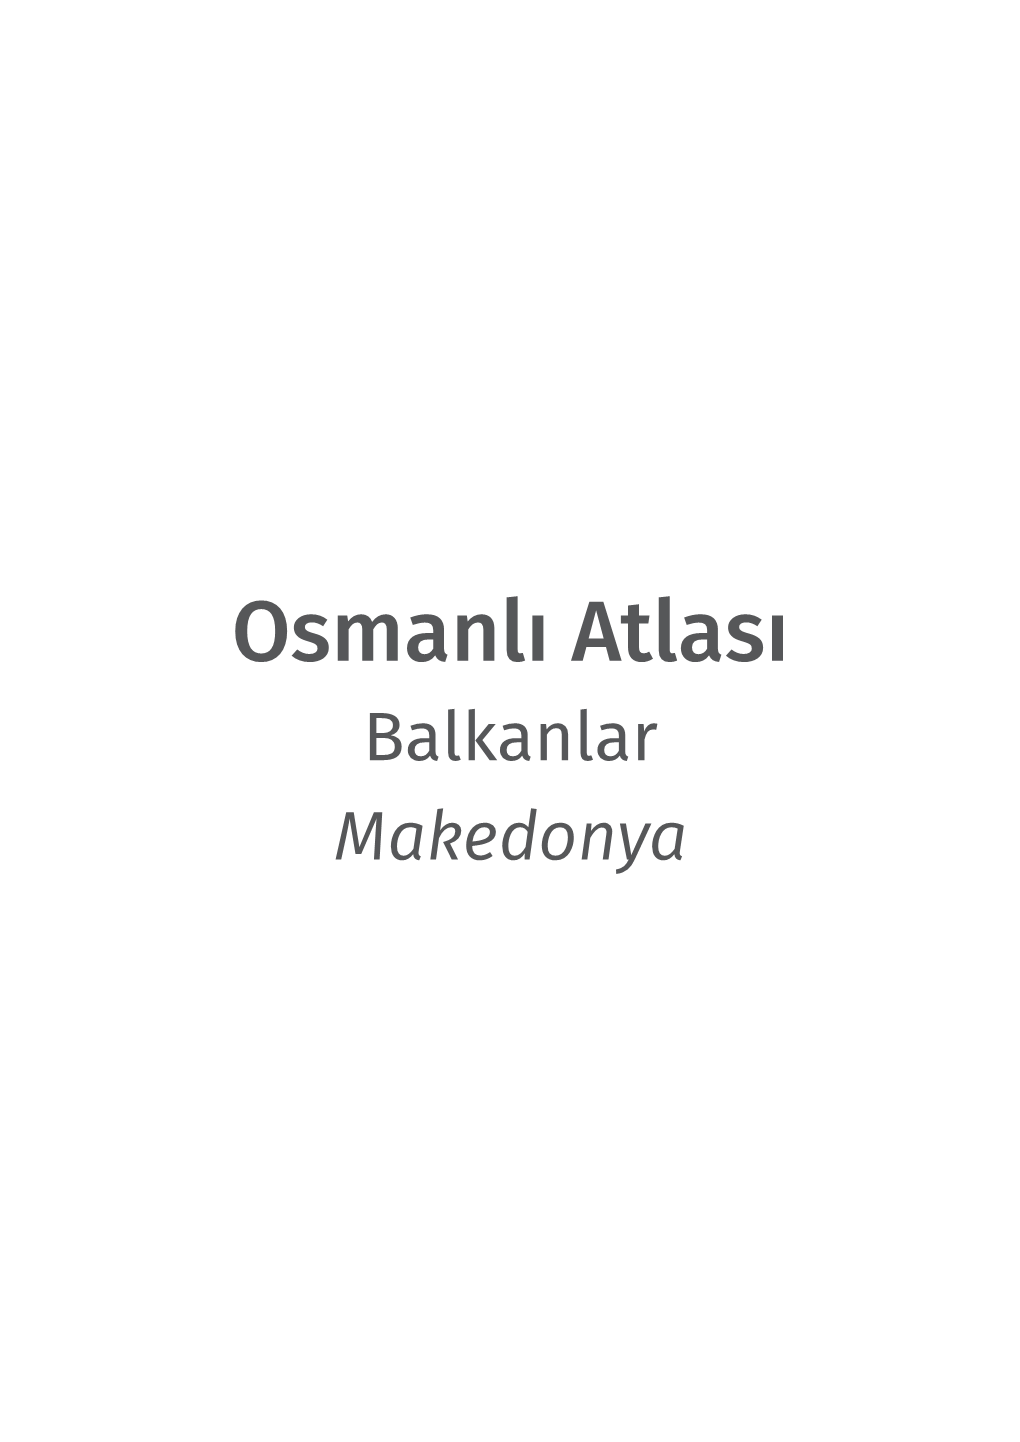 Osmanlı Atlası Balkanlar Makedonya Osmanlı Atlası Projesi